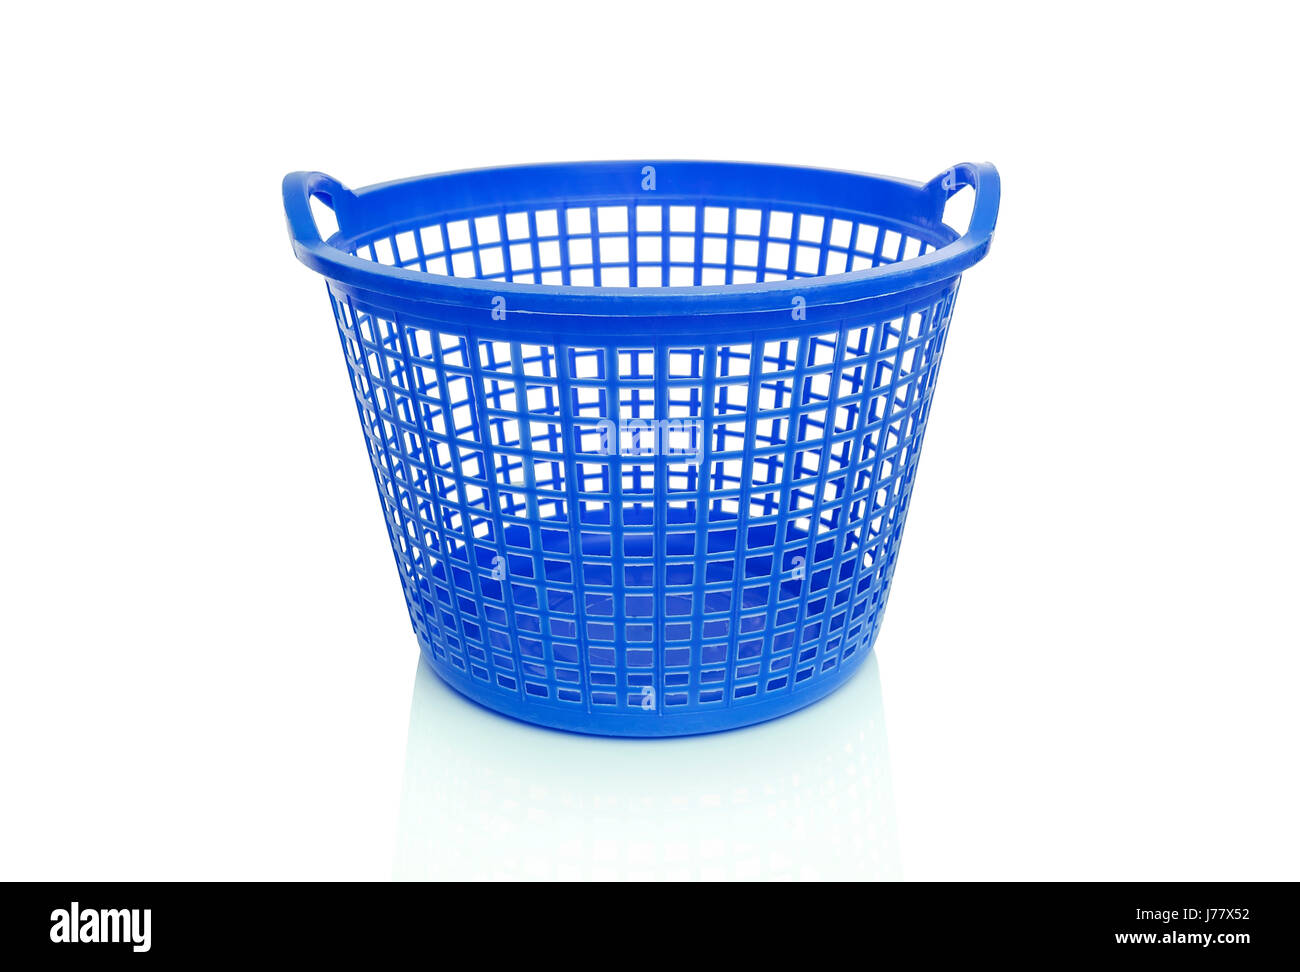 Plastic laundry basket. Stock Photo